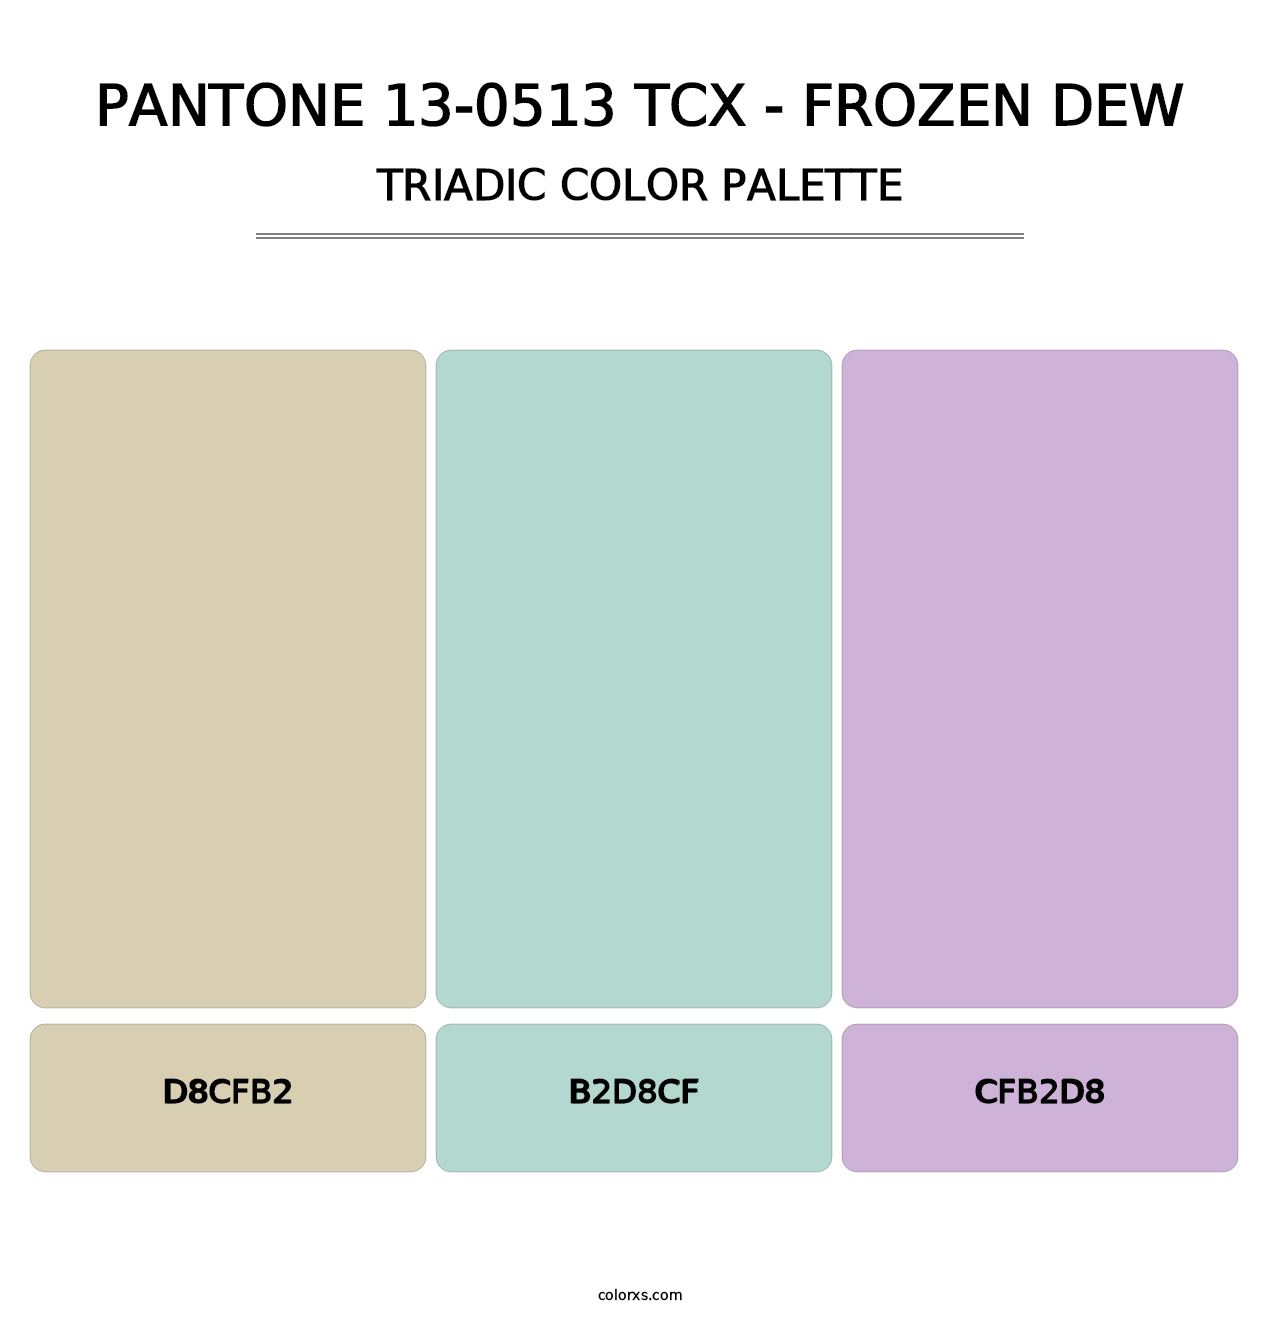 PANTONE 13-0513 TCX - Frozen Dew - Triadic Color Palette